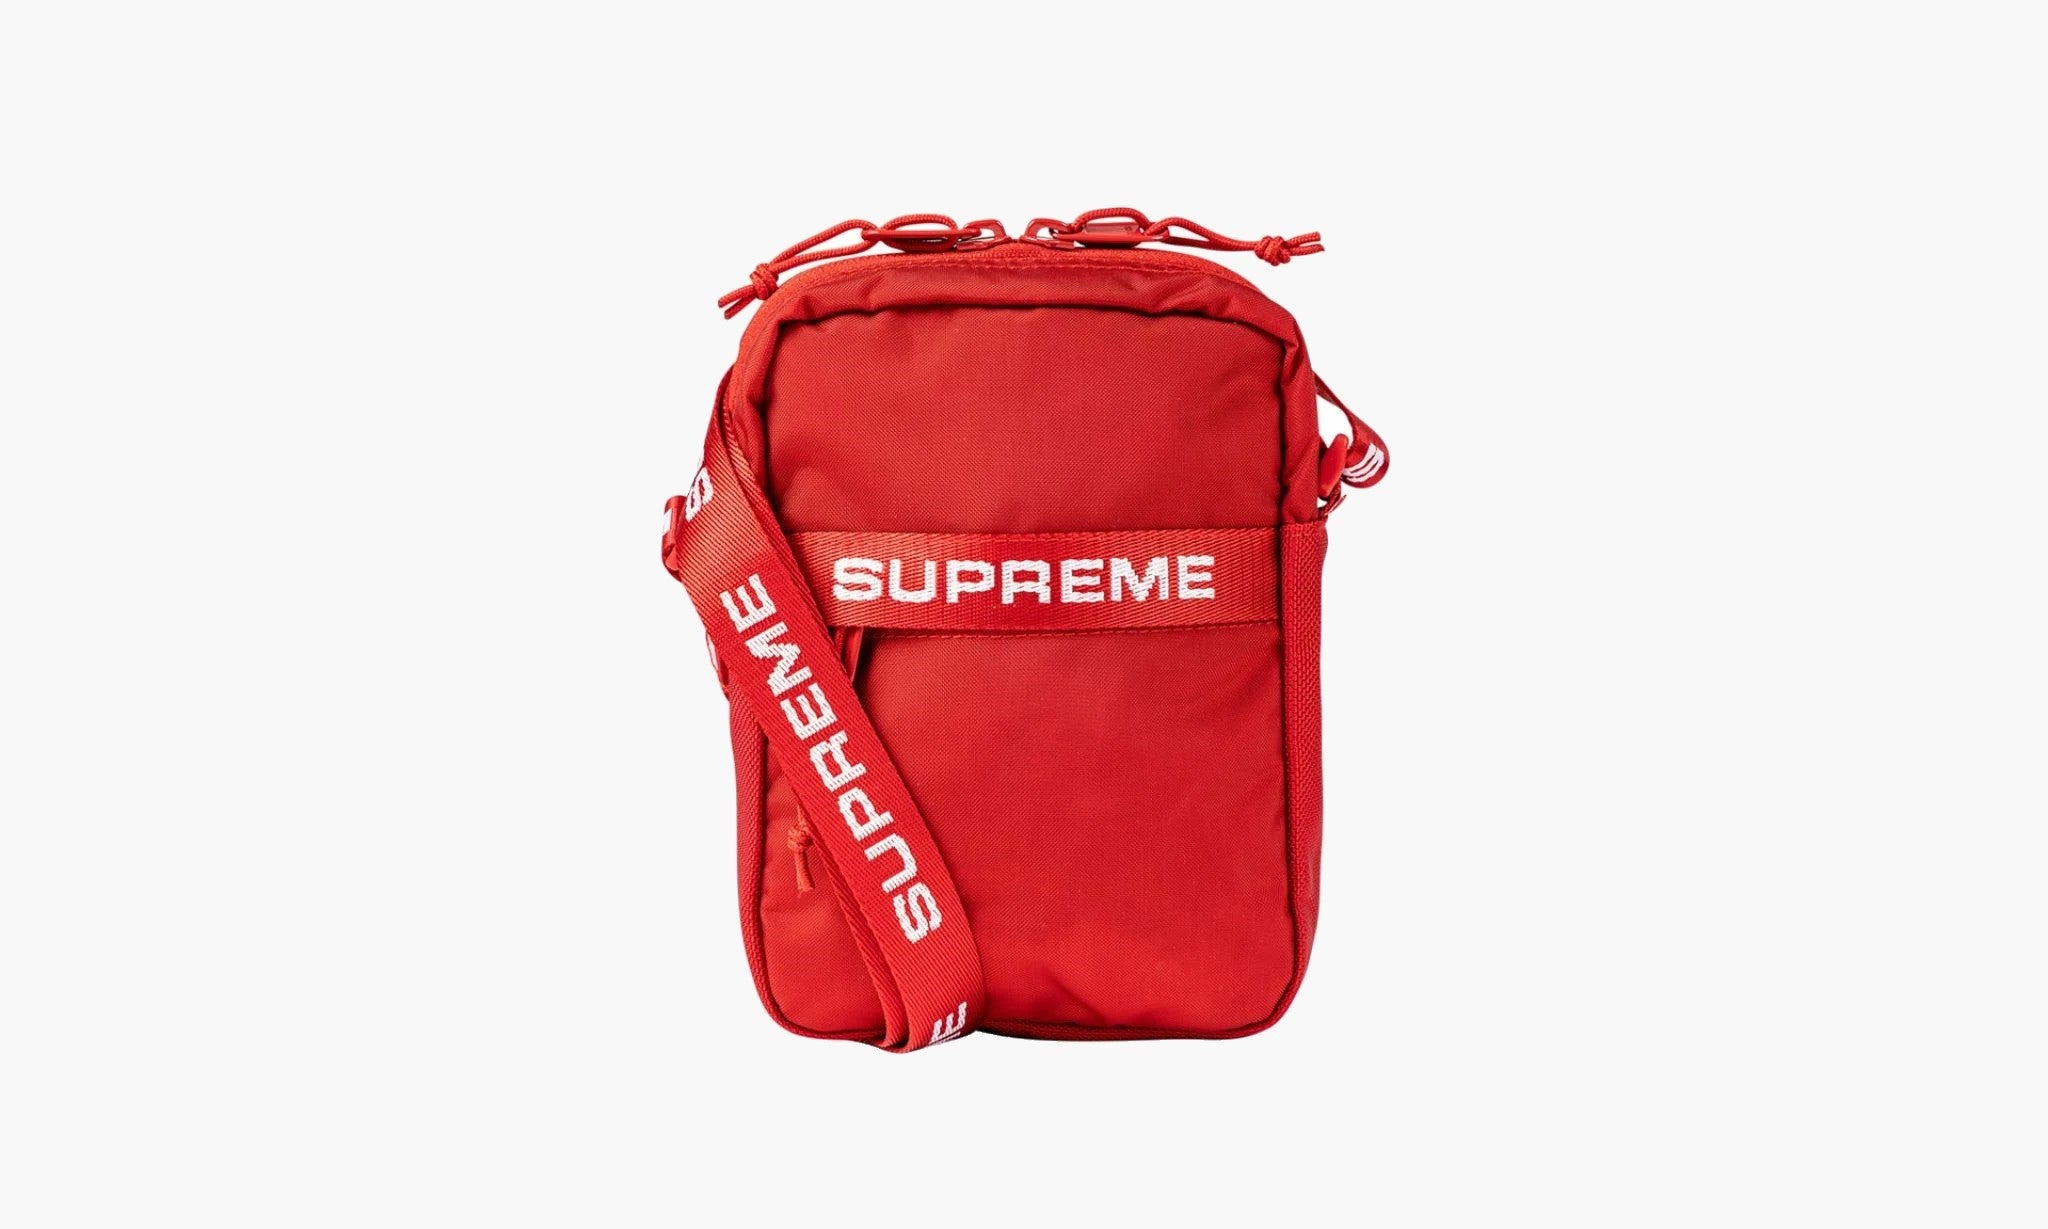 Сумка supreme. Supreme fw22 сумка. Сумка Supreme 18ss оригинал. Supreme Shoulder Bag ss18. Duffle Bag Supreme 19 FW.